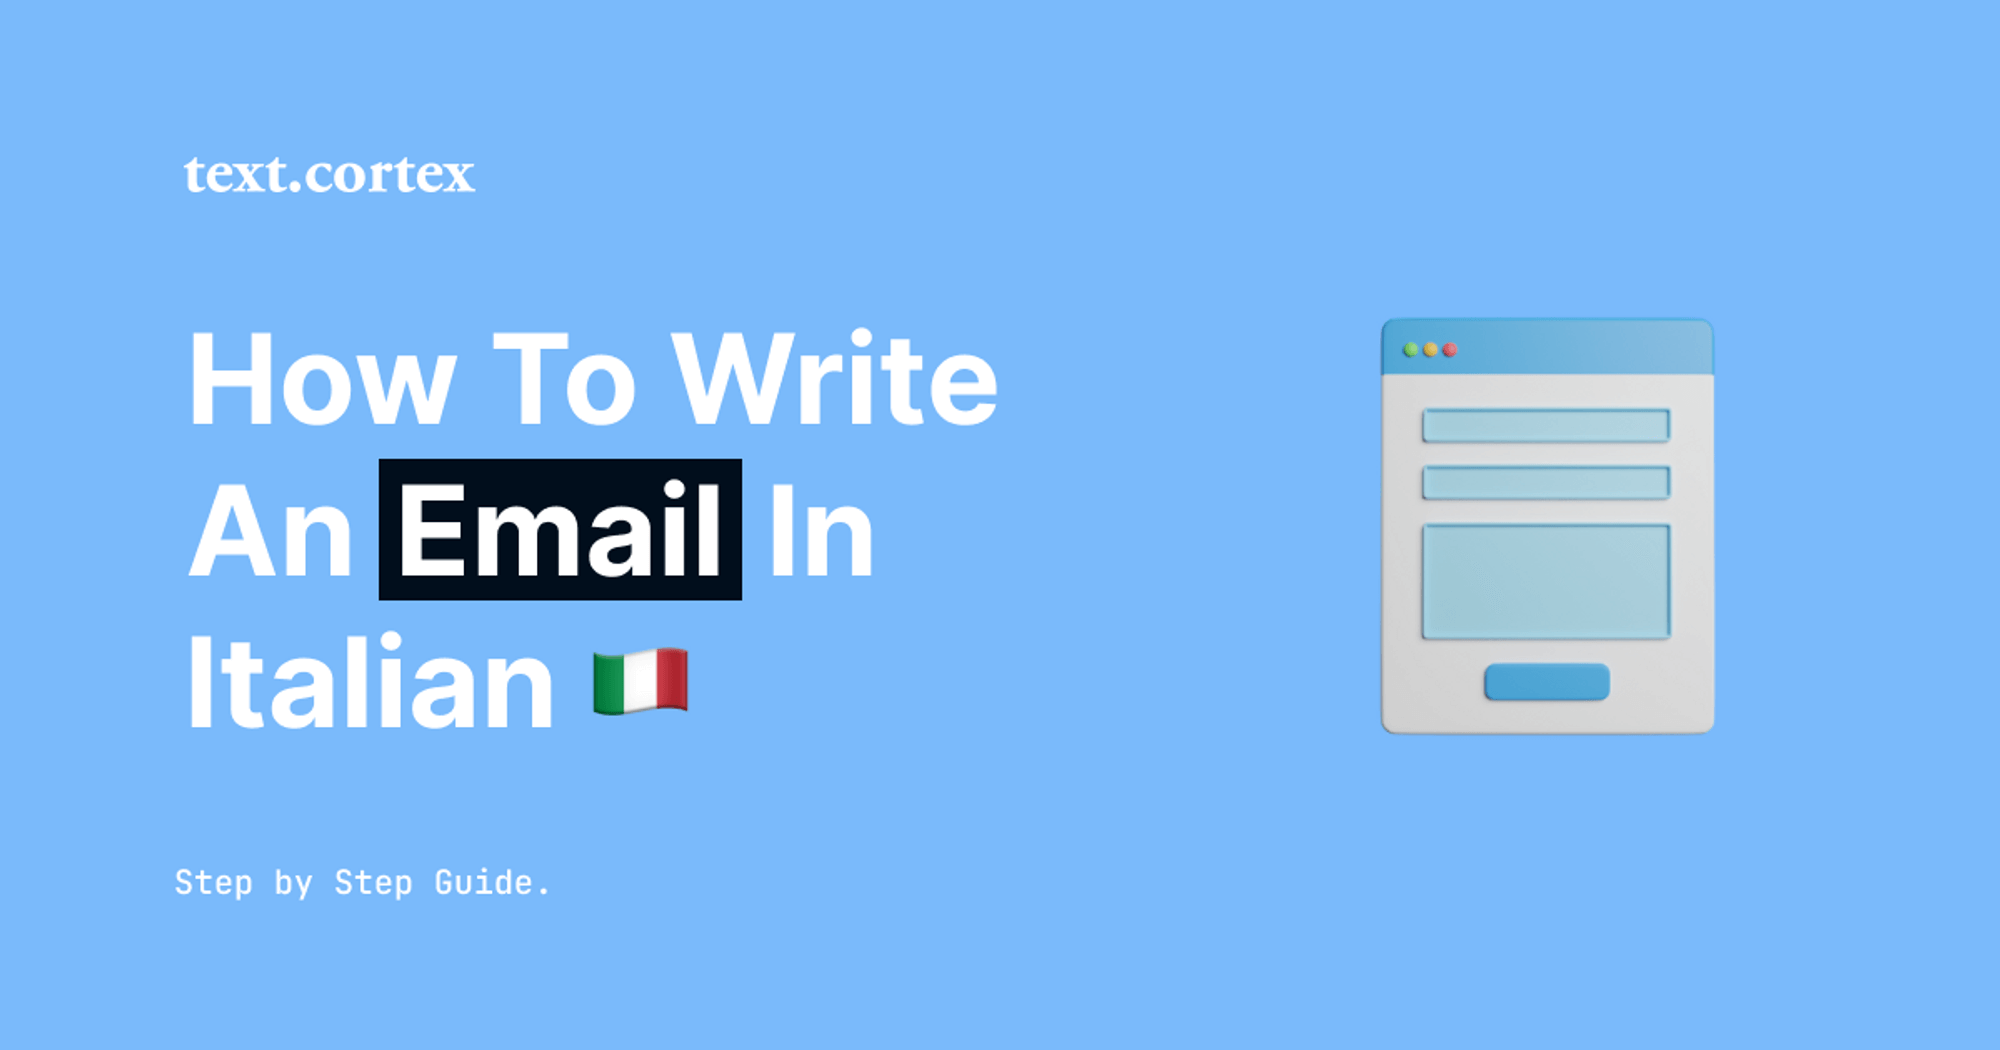 Hur man skriver ett e-postmeddelande på italienska - steg-för-steg-guide